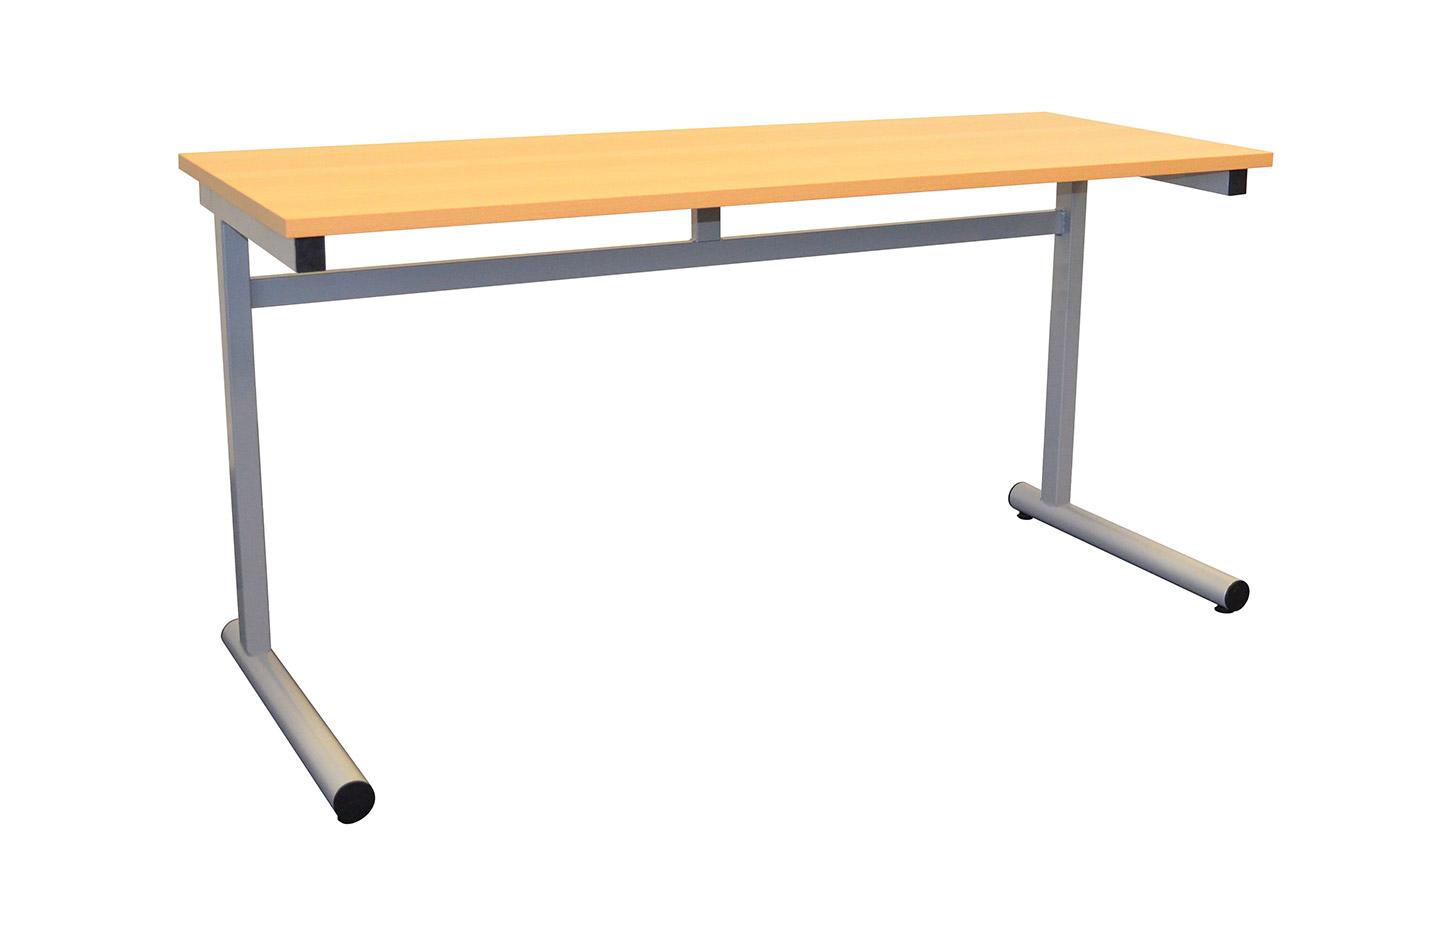 Table scolaire taille 4/5/6/7 réglable en hauteur, primaire à la fac, gamme Sand - France Bureau